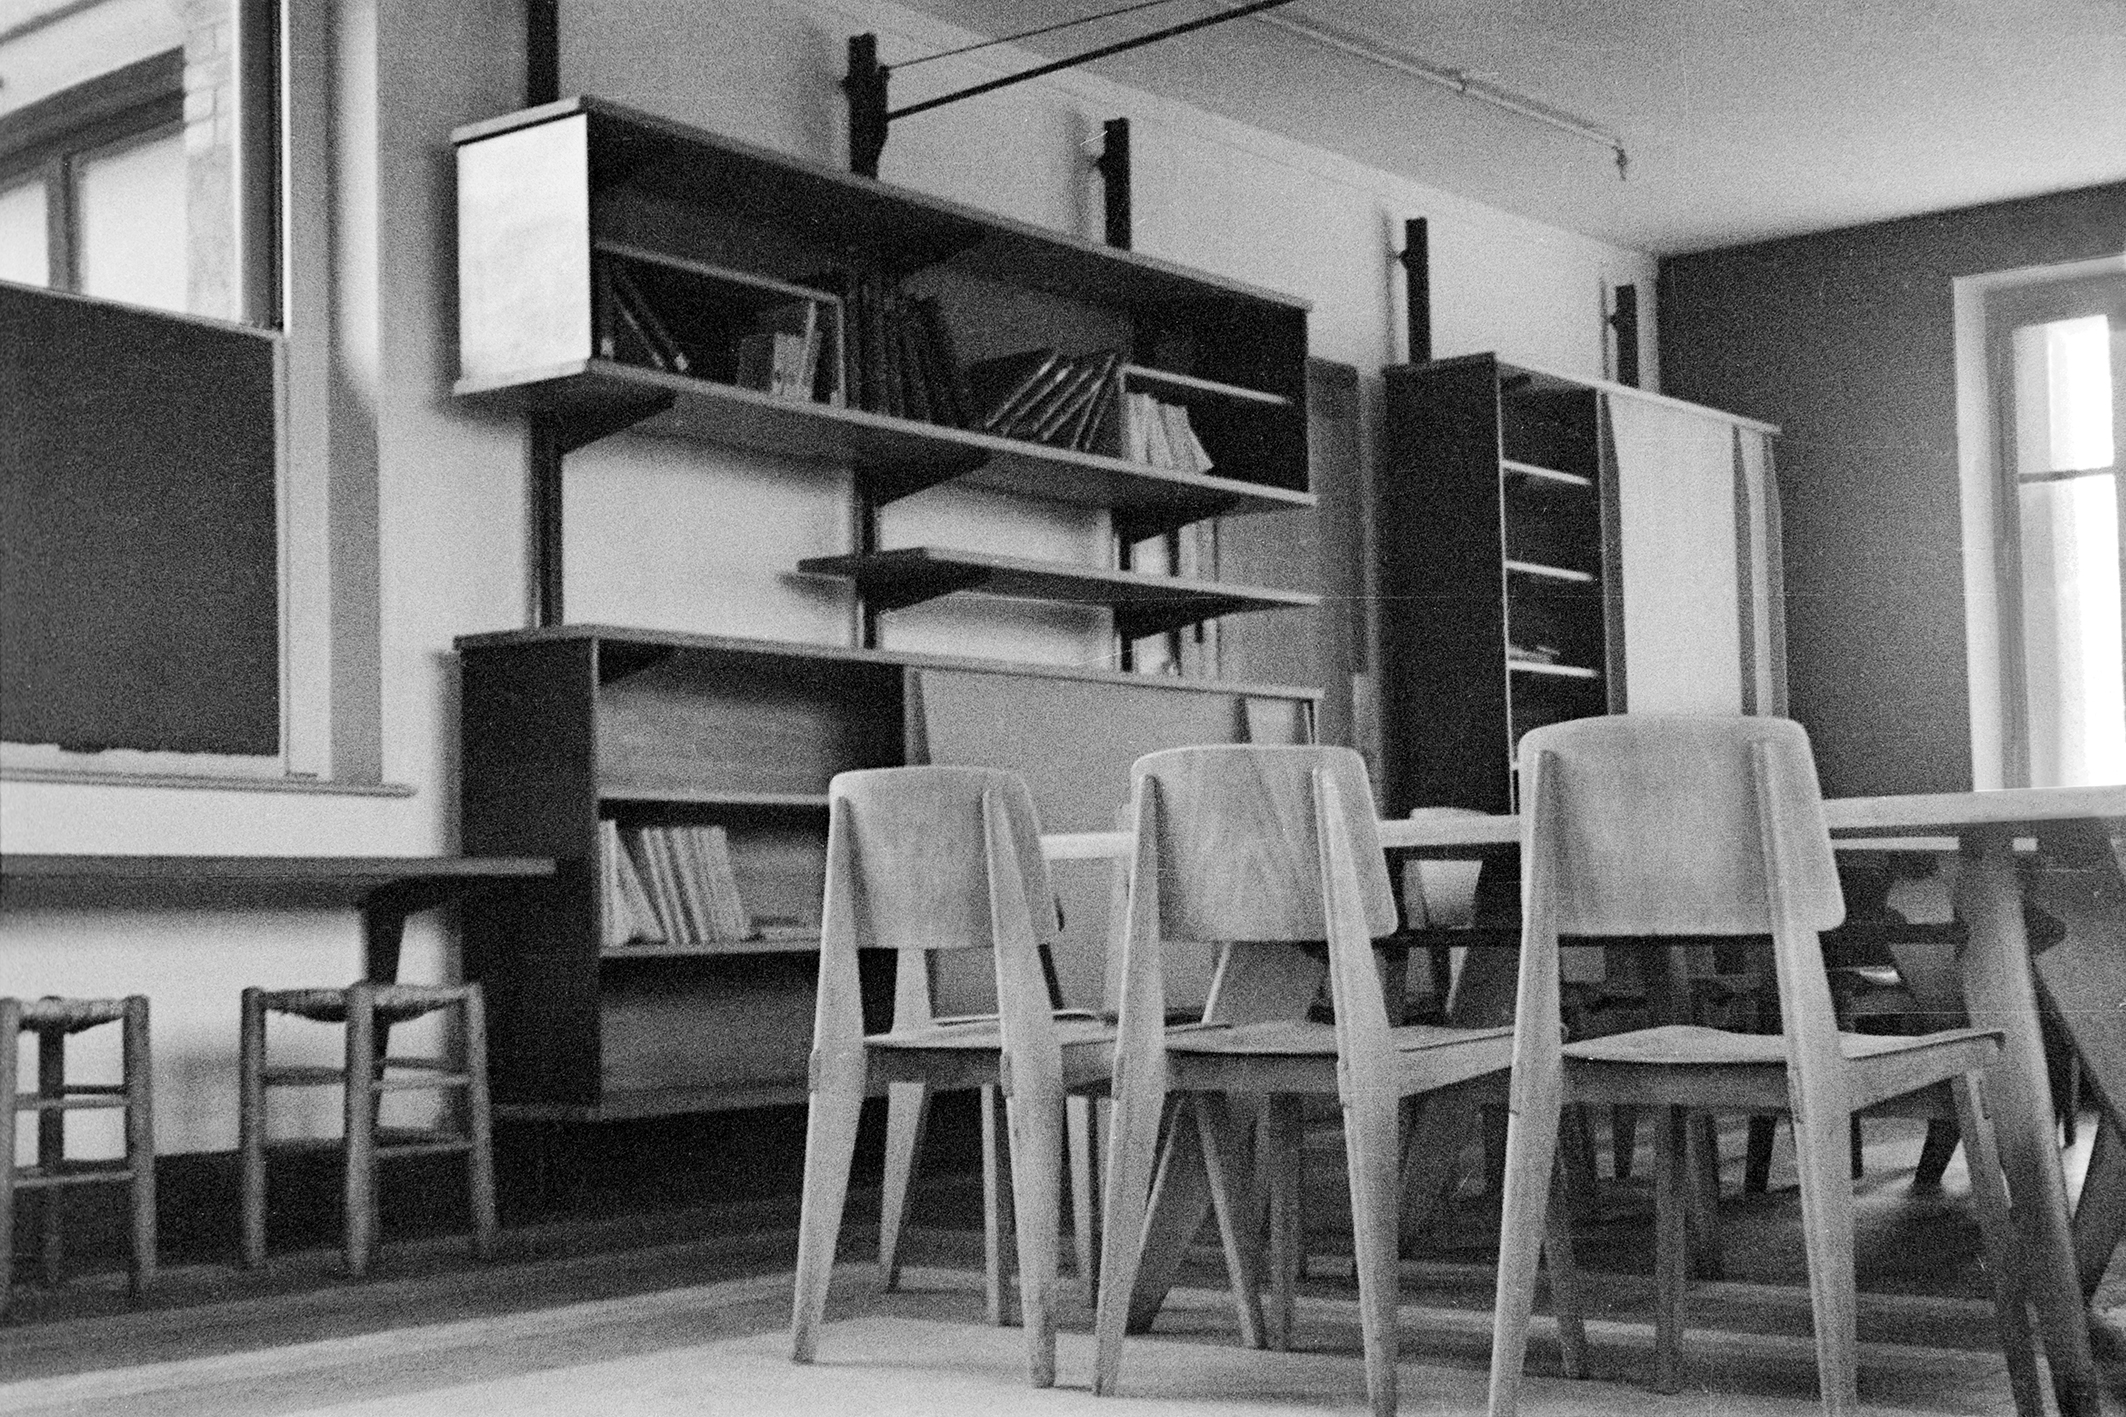 Foyer du personnel de l’imprimerie Berger-Levrault, Nancy, c. 1942. Ensemble de chaises Tout Bois et meubles suspendus sur crémaillères.